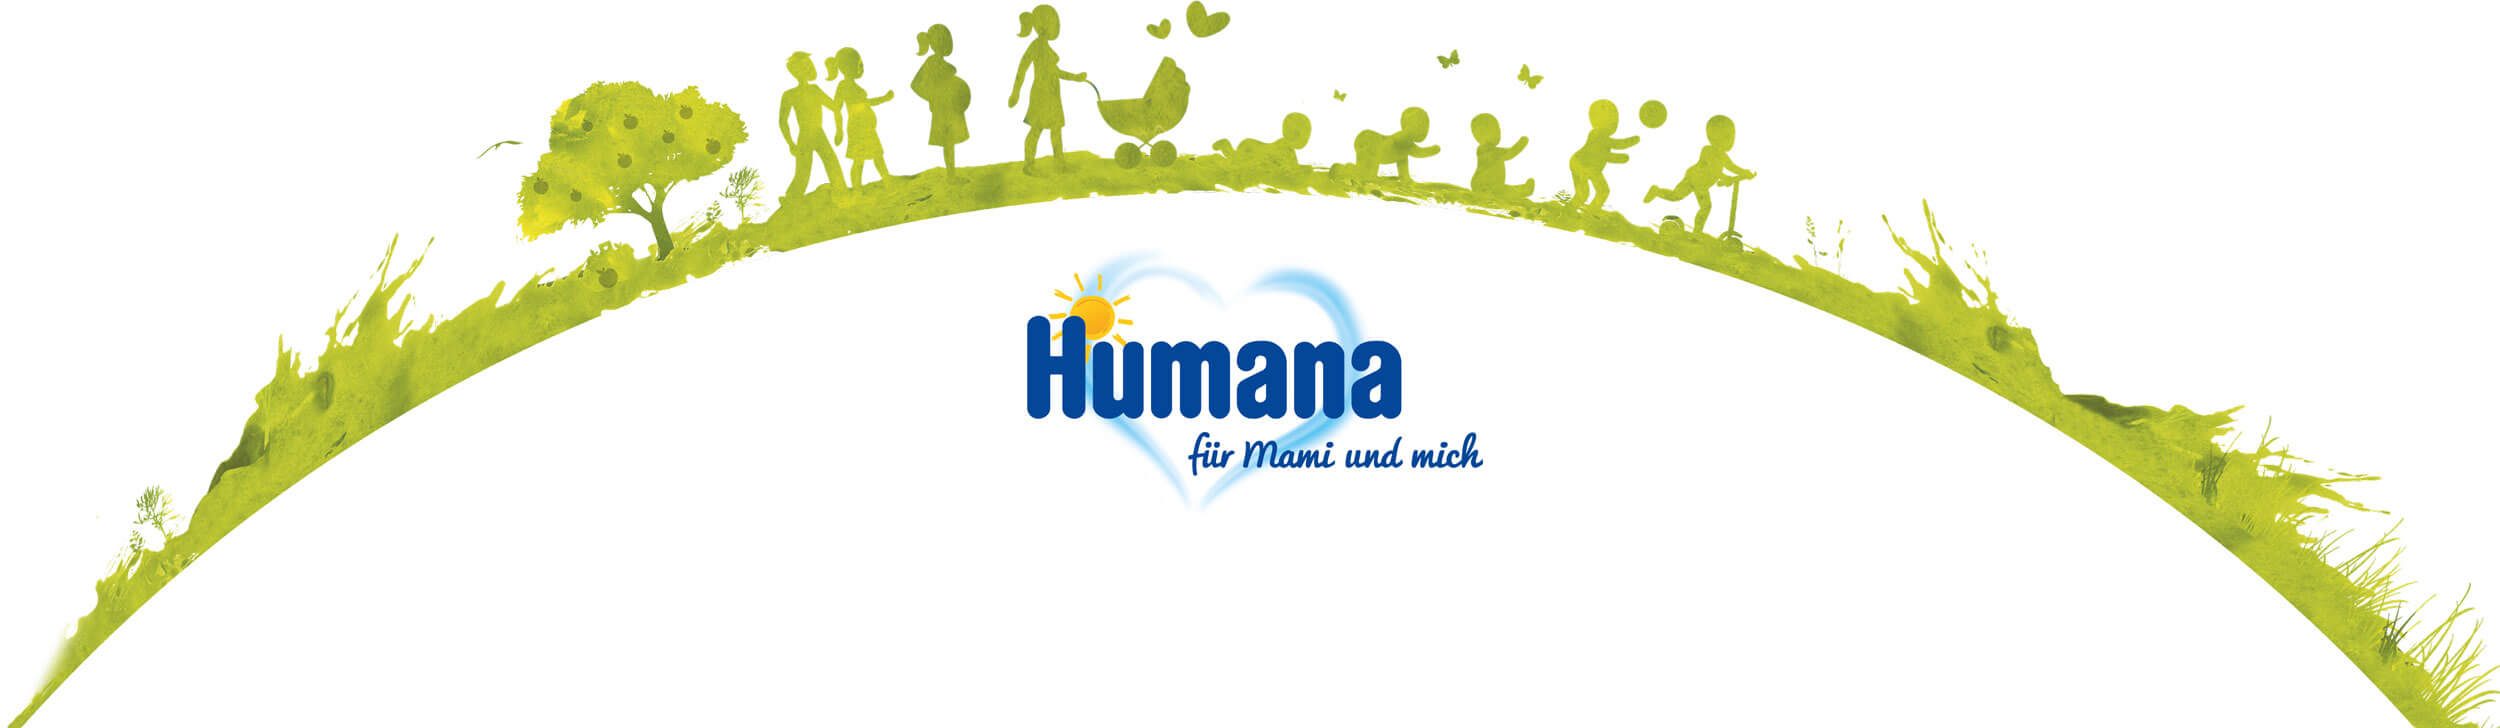 KloseDetering Werbeagentur strategische Markenfuehrung Humana